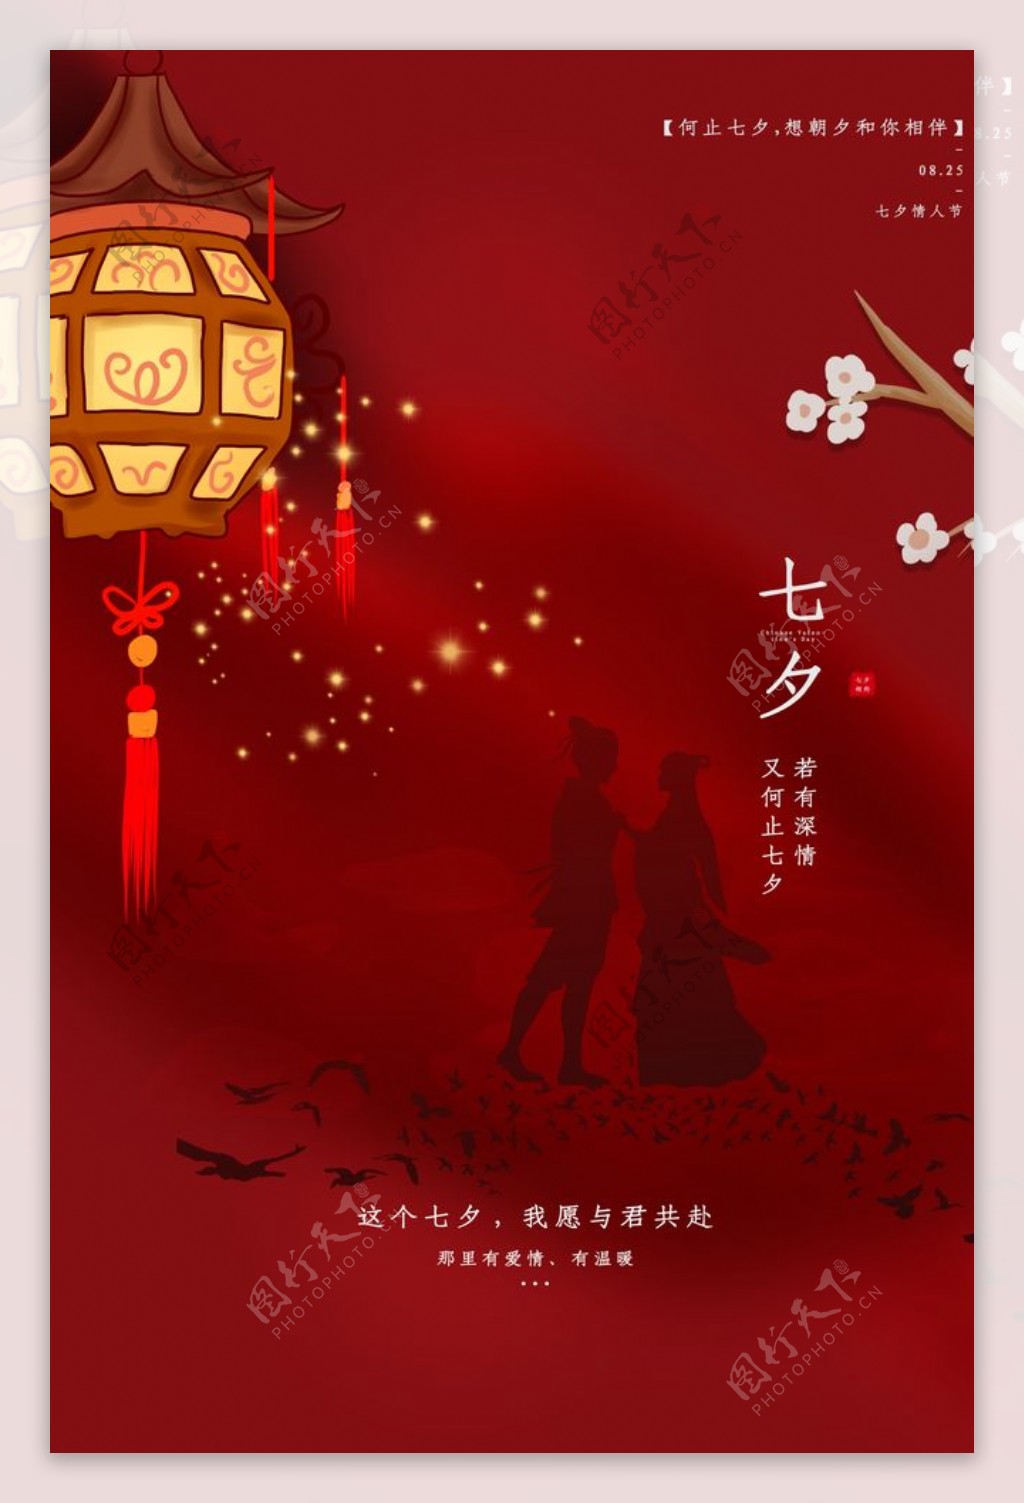 七夕节日传统国风海报素材